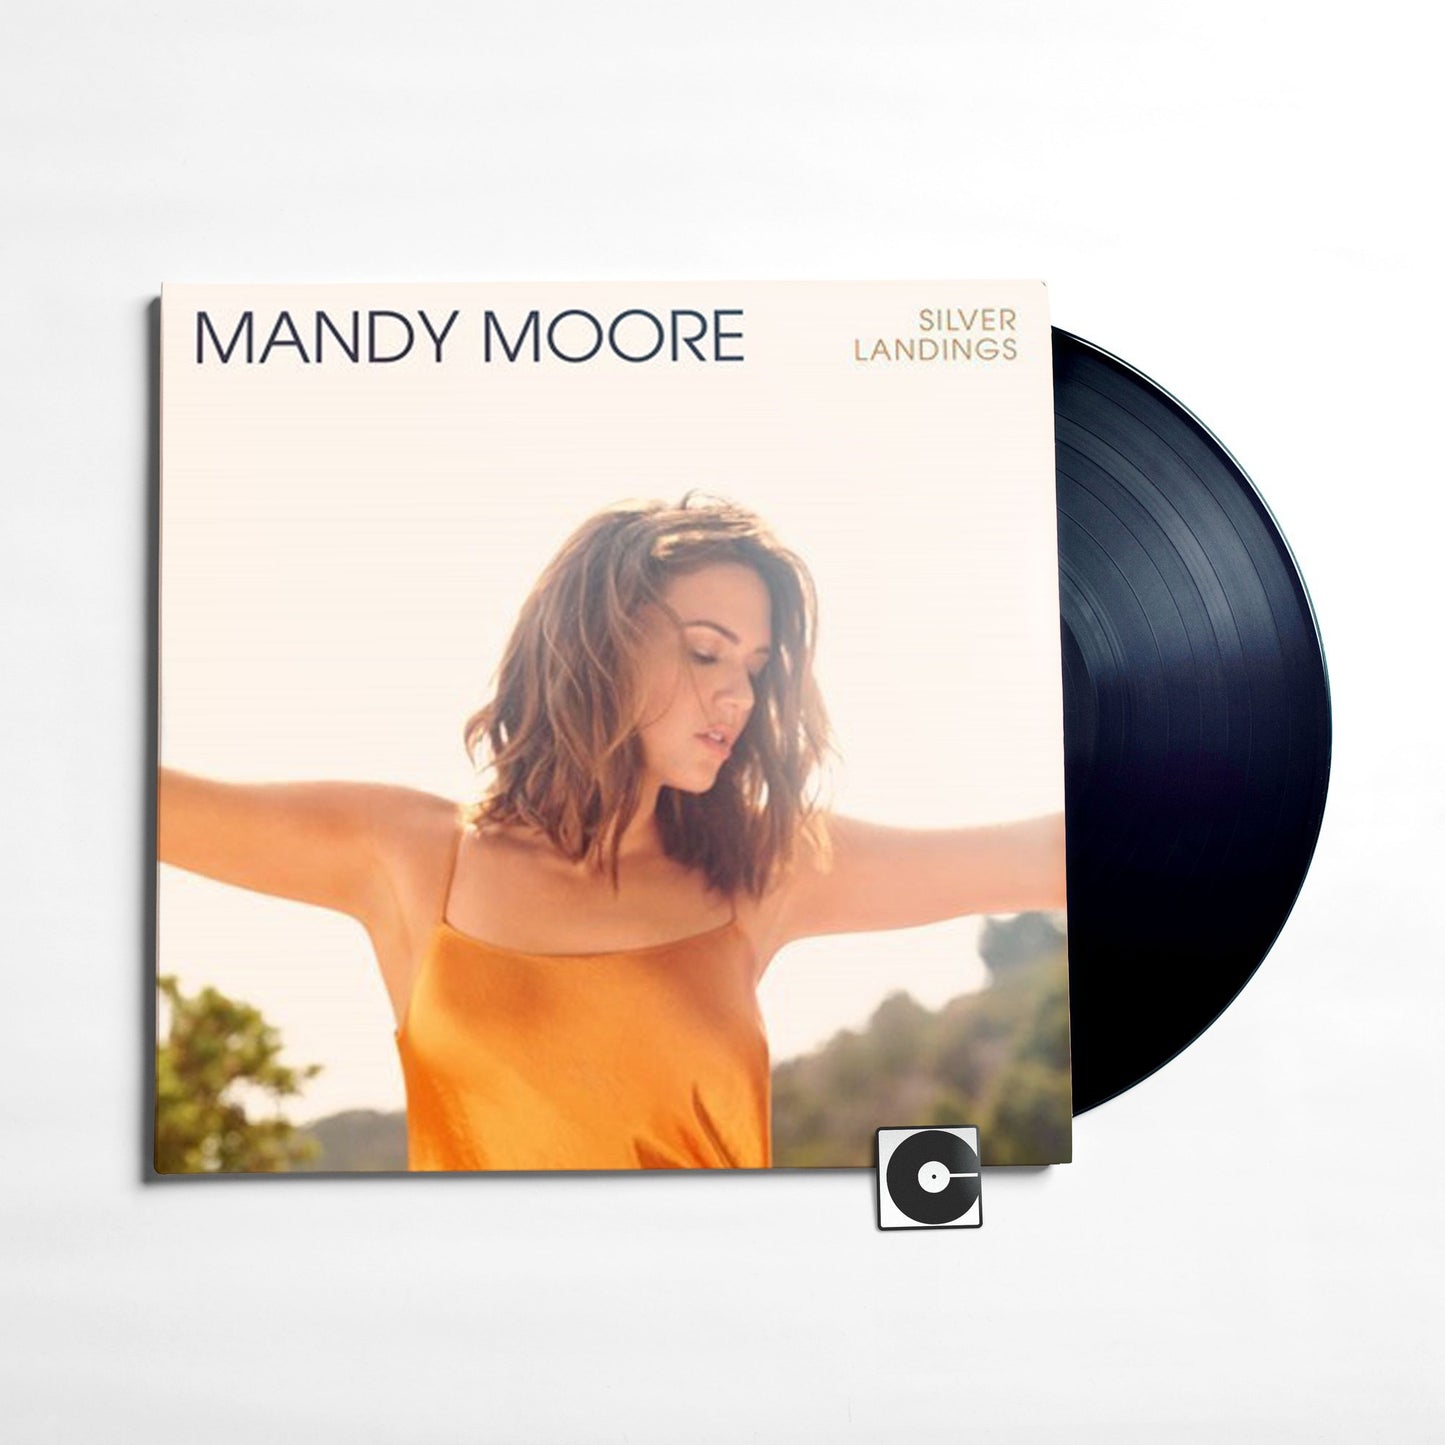 Mandy Moore - "Silver Landings"